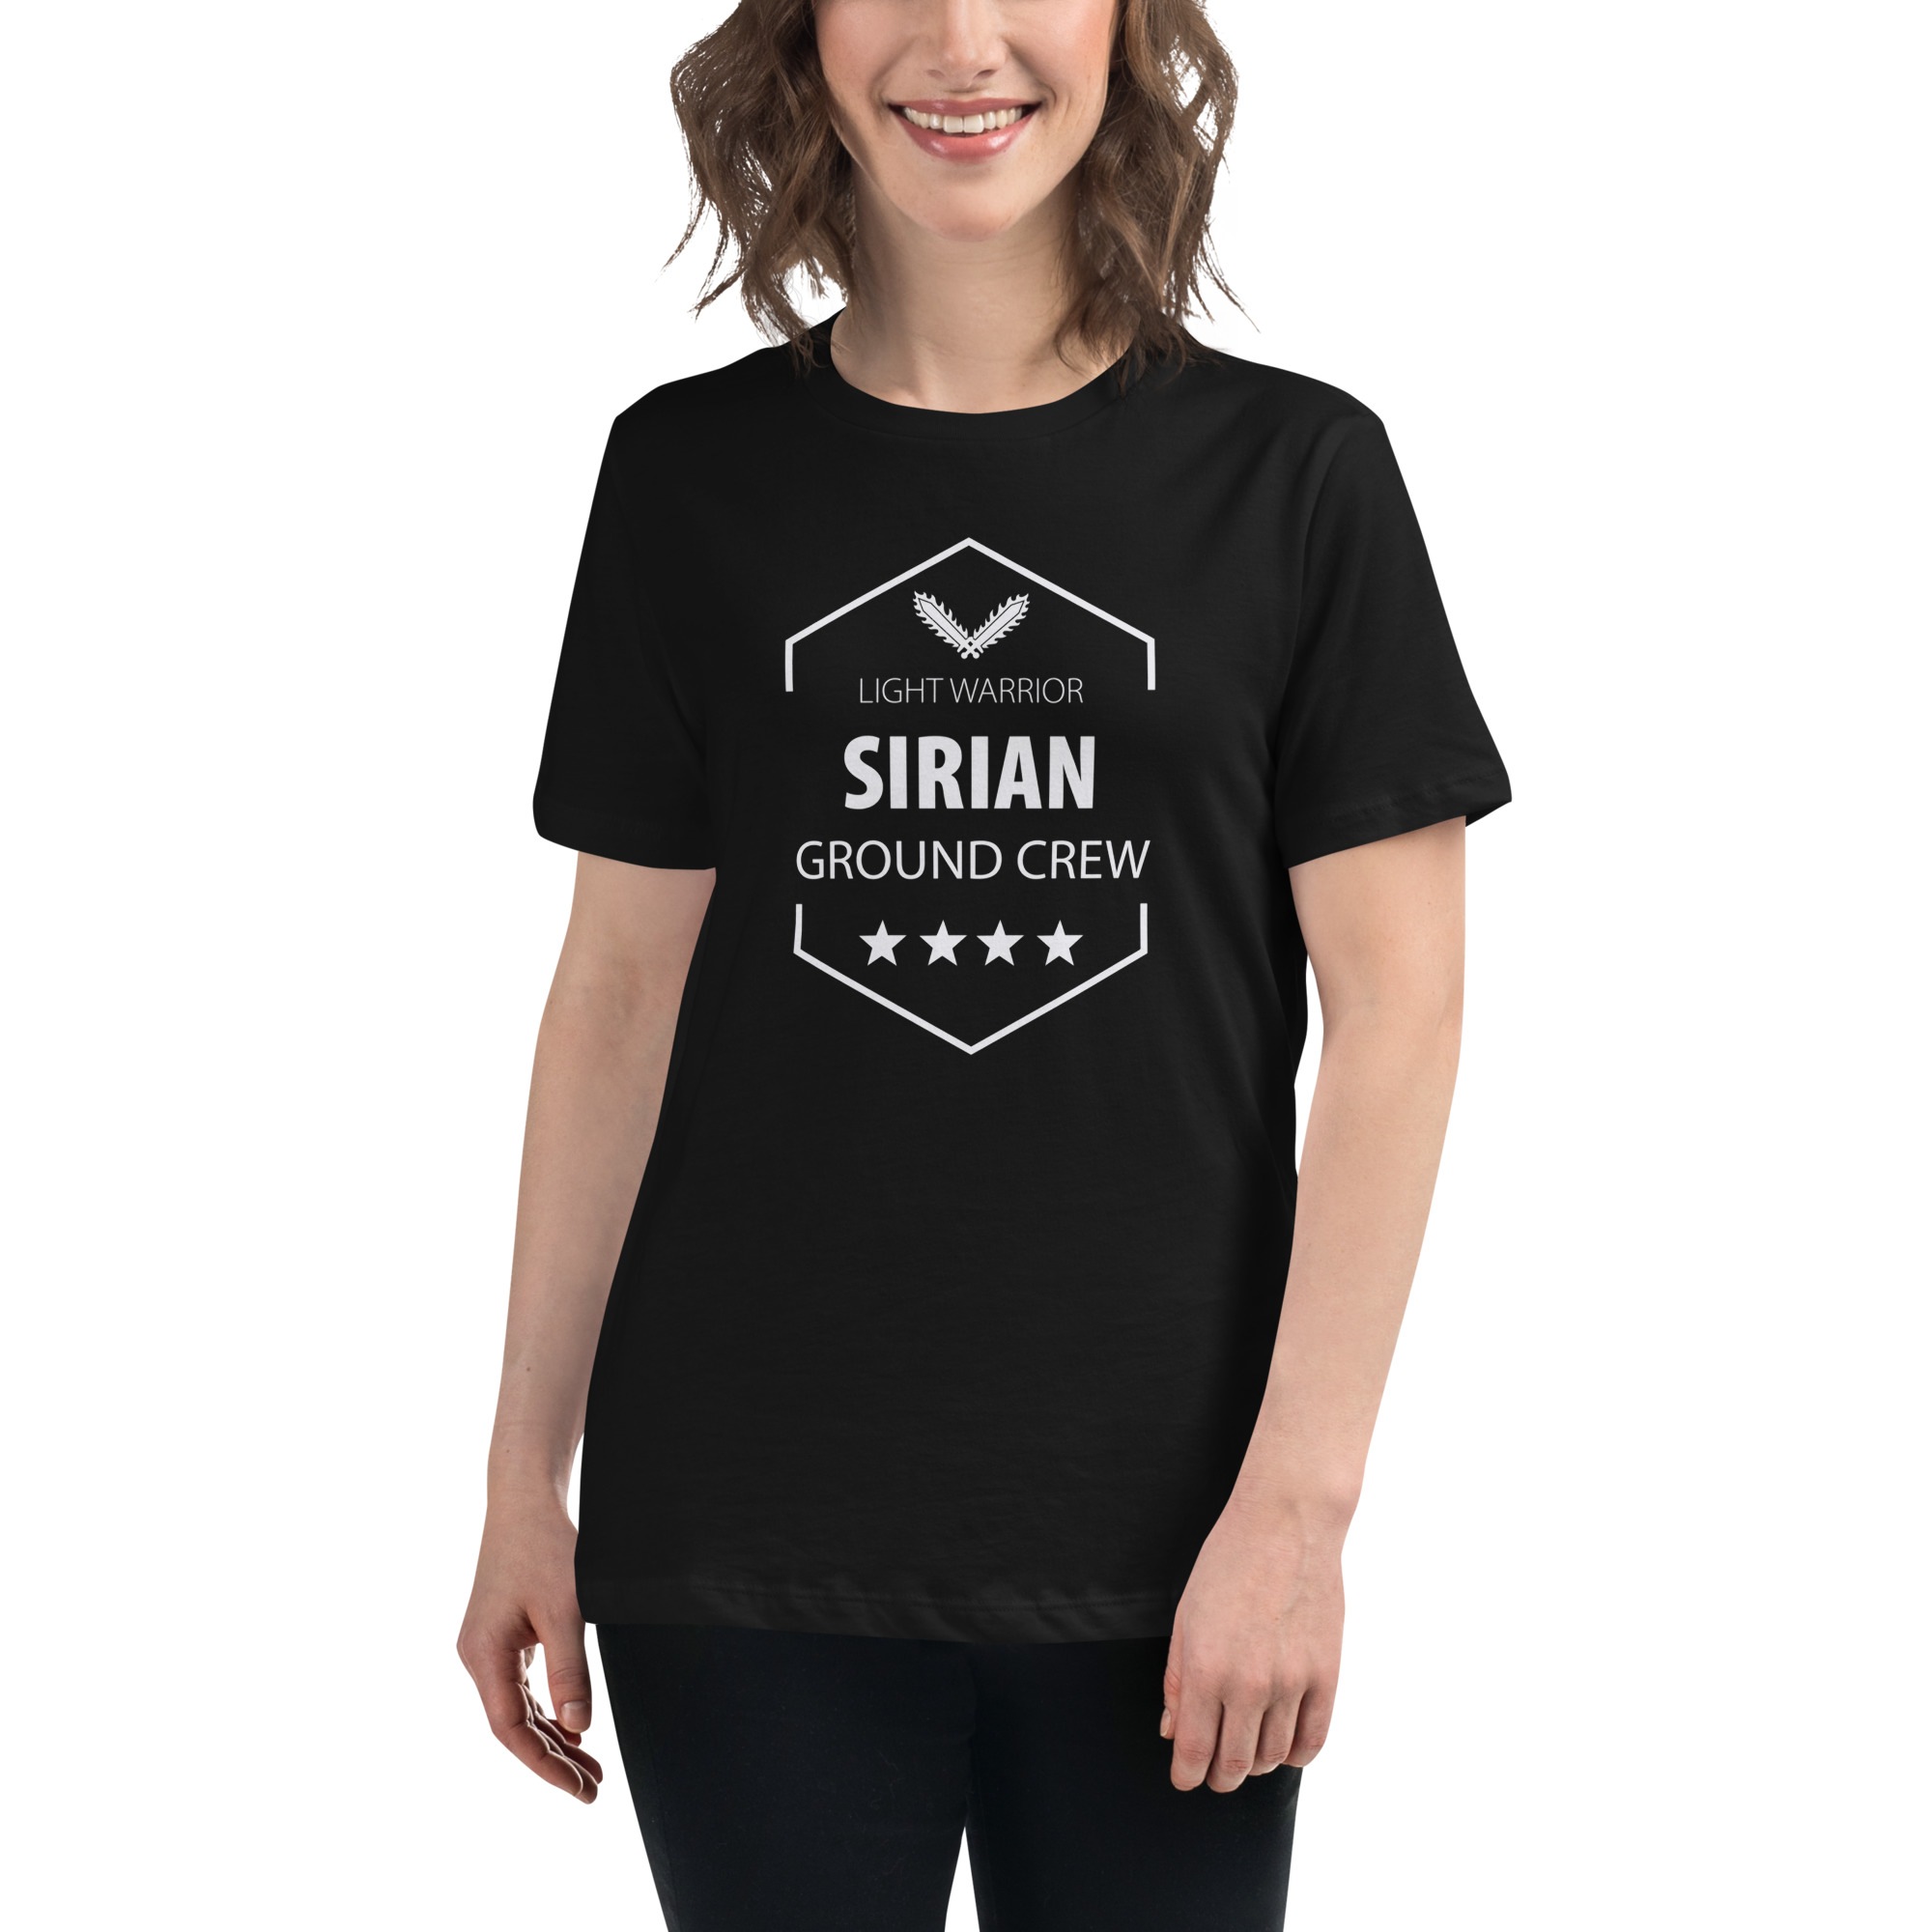 Sirian Ground Crew Tshirt